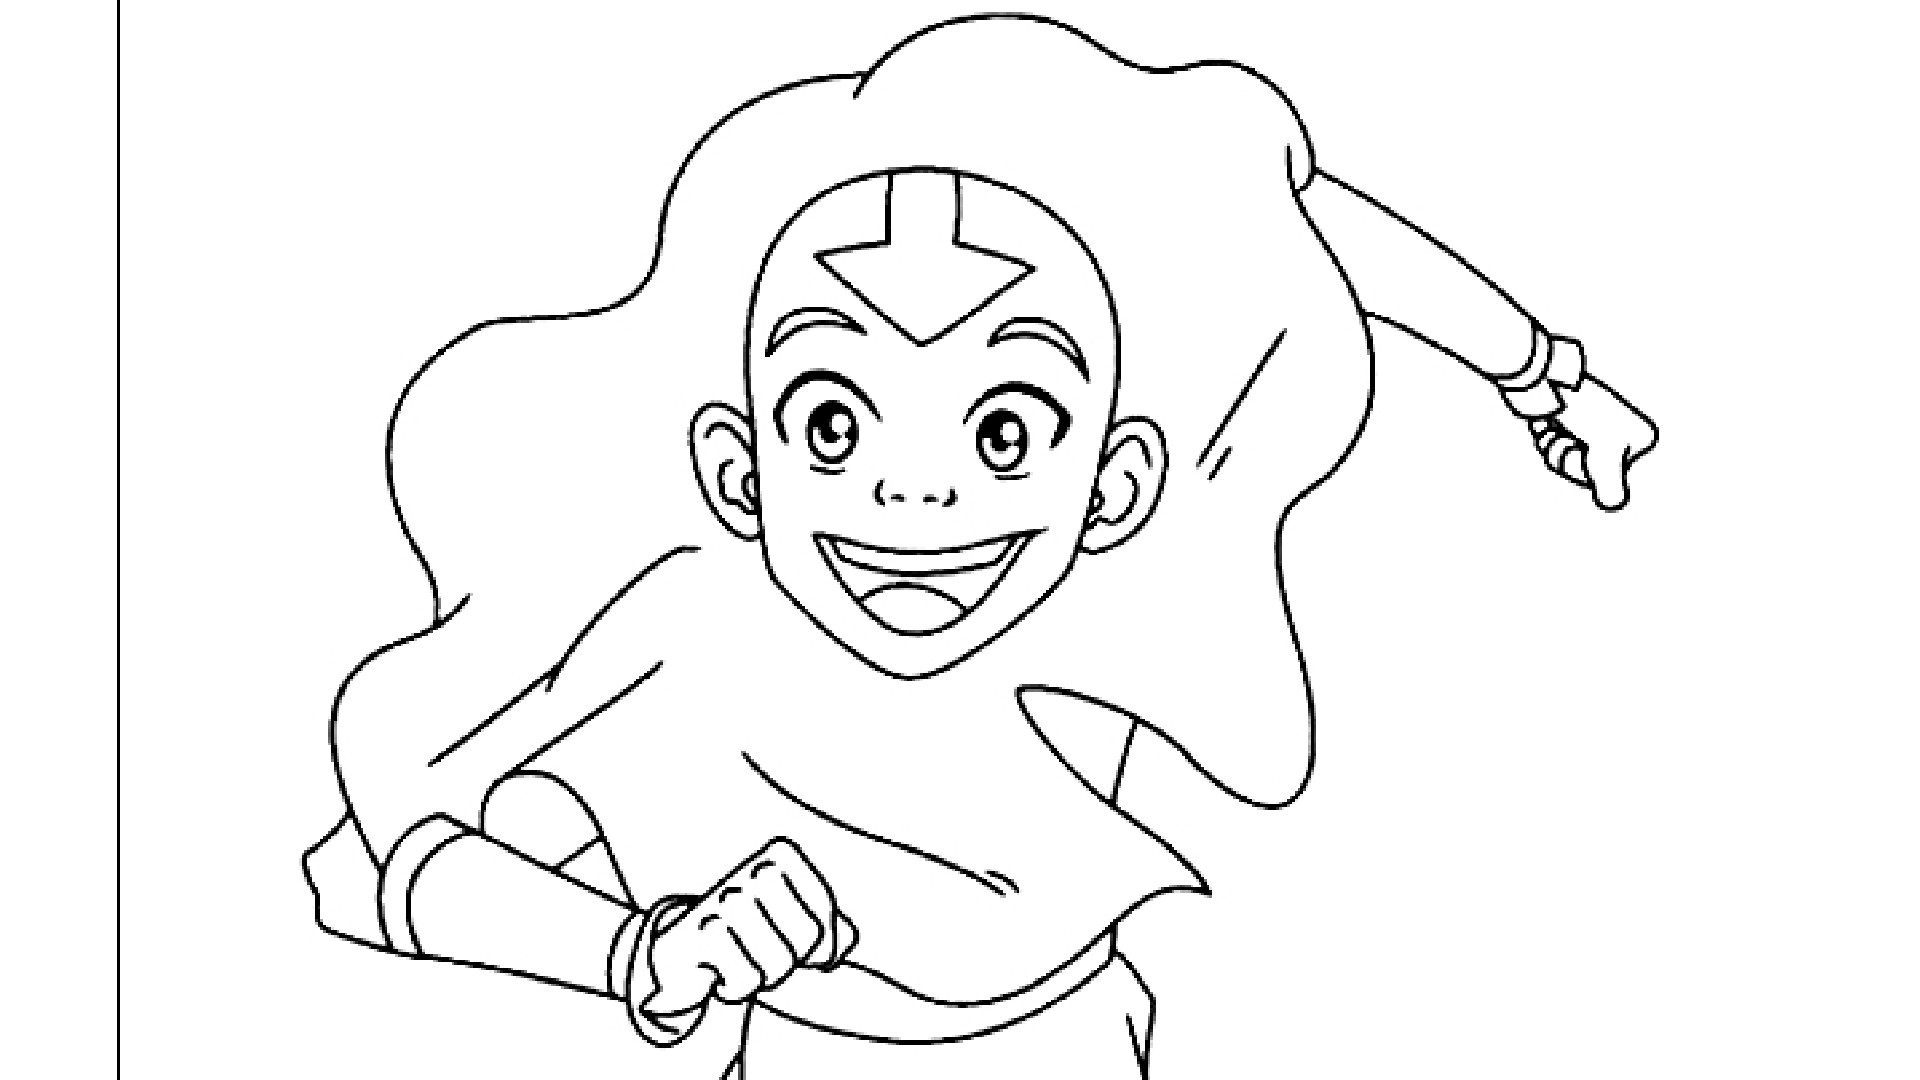 Disegno di Aang di Avatar la leggenda di Aang da stampare e colorare